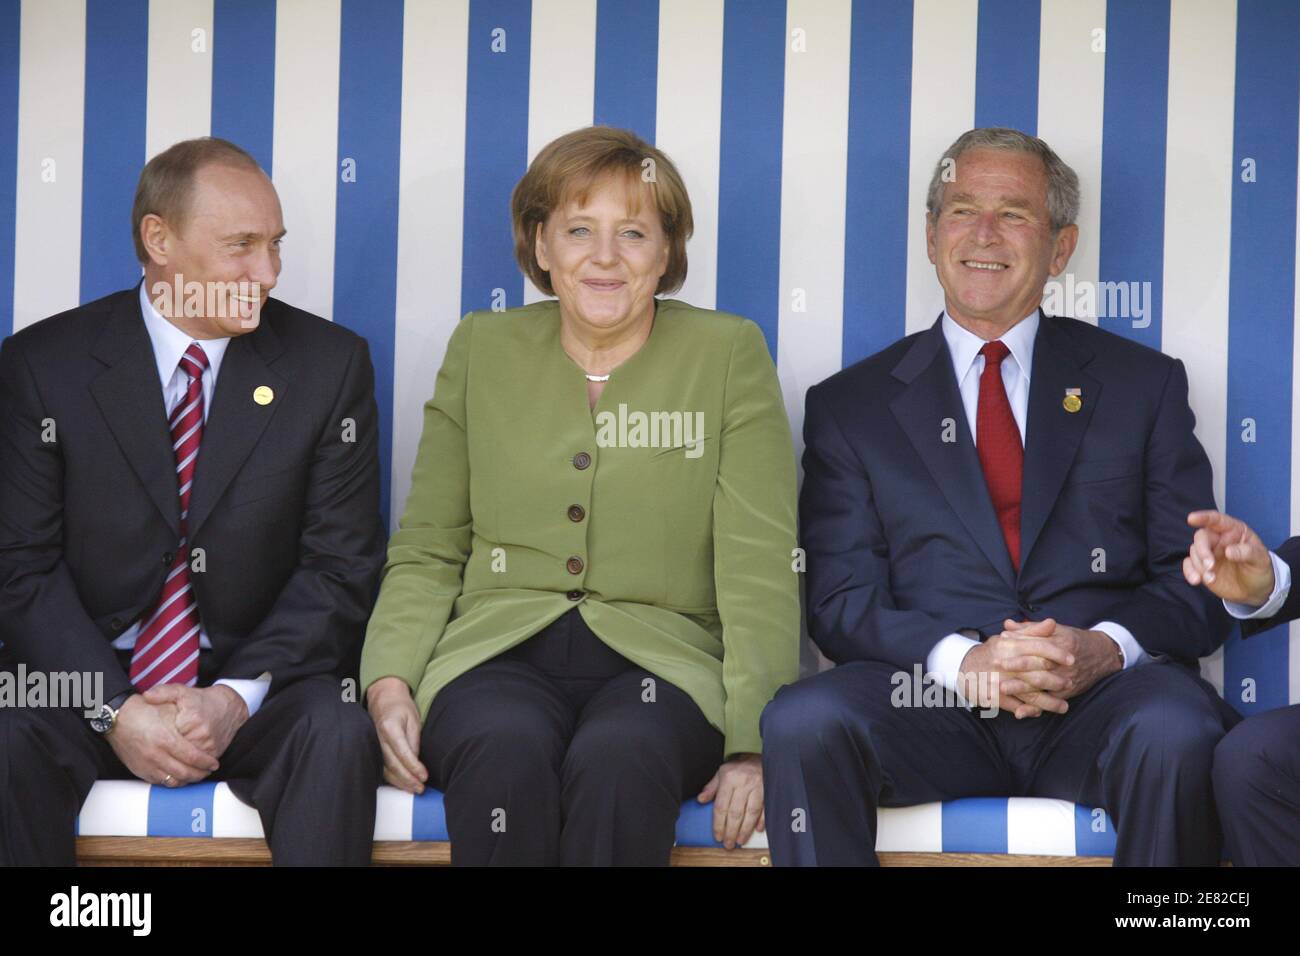 La chancelière allemande Angela Merkel discute avec le président russe Vladimir Poutine (L) et le président américain George W. Bush (R) lorsqu'ils se posent dans une chaise de plage géante pour une photo de famille avec les chefs d'État du G8 devant le bâtiment Kurhaus de Heiligendamm, dans le nord-est de l'Allemagne, le 7 juin 2007. Photo de Ludovic/pool/ABACAPRESS.COM Banque D'Images